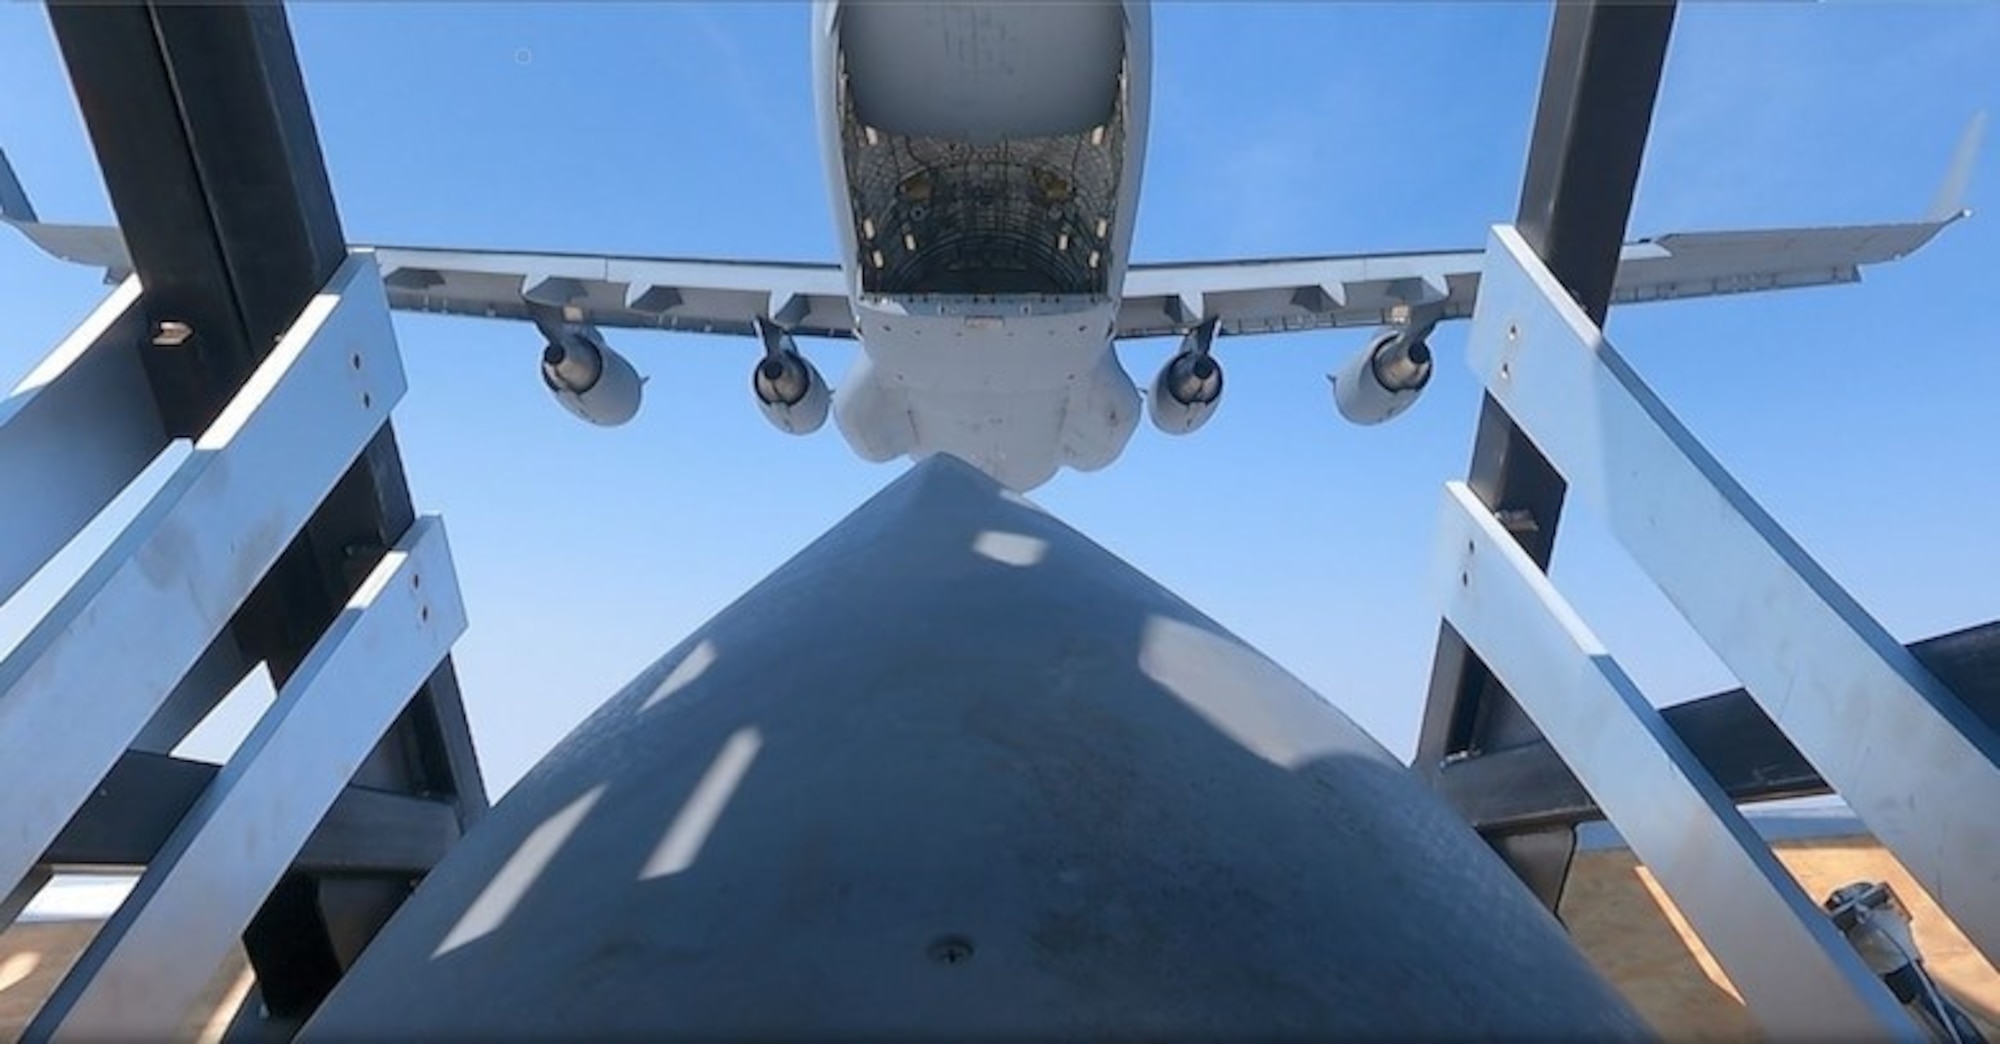 MC-130J Combat Talon II palletized munitions drop during Rapid Dragon exercise.